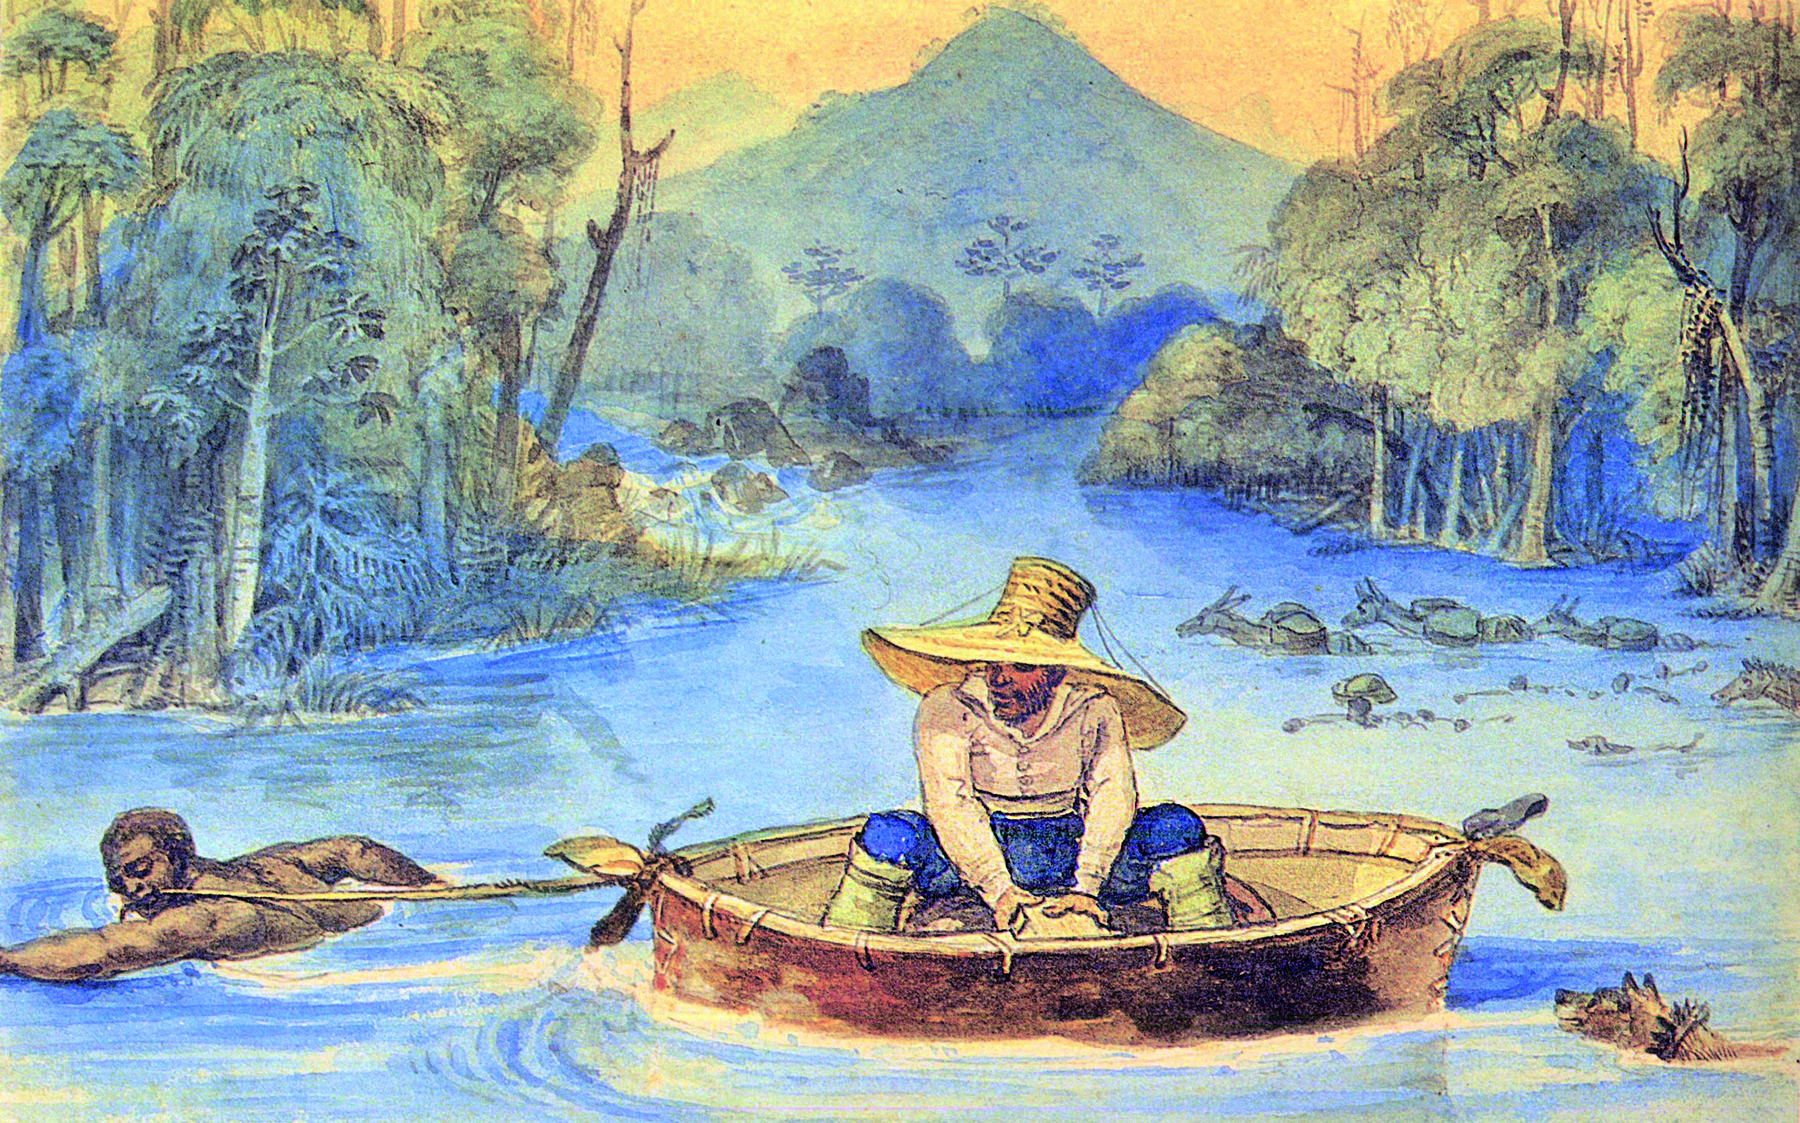 Gravura. Homem de chapéu grande, camisa, calça azul e botas está sentado dentro de uma embarcação oval, semelhante a um grande cesto. Um homem negro está nadando no rio, puxando a embarcação através de uma corda na boca. Ao fundo, um rio e vegetação densa.